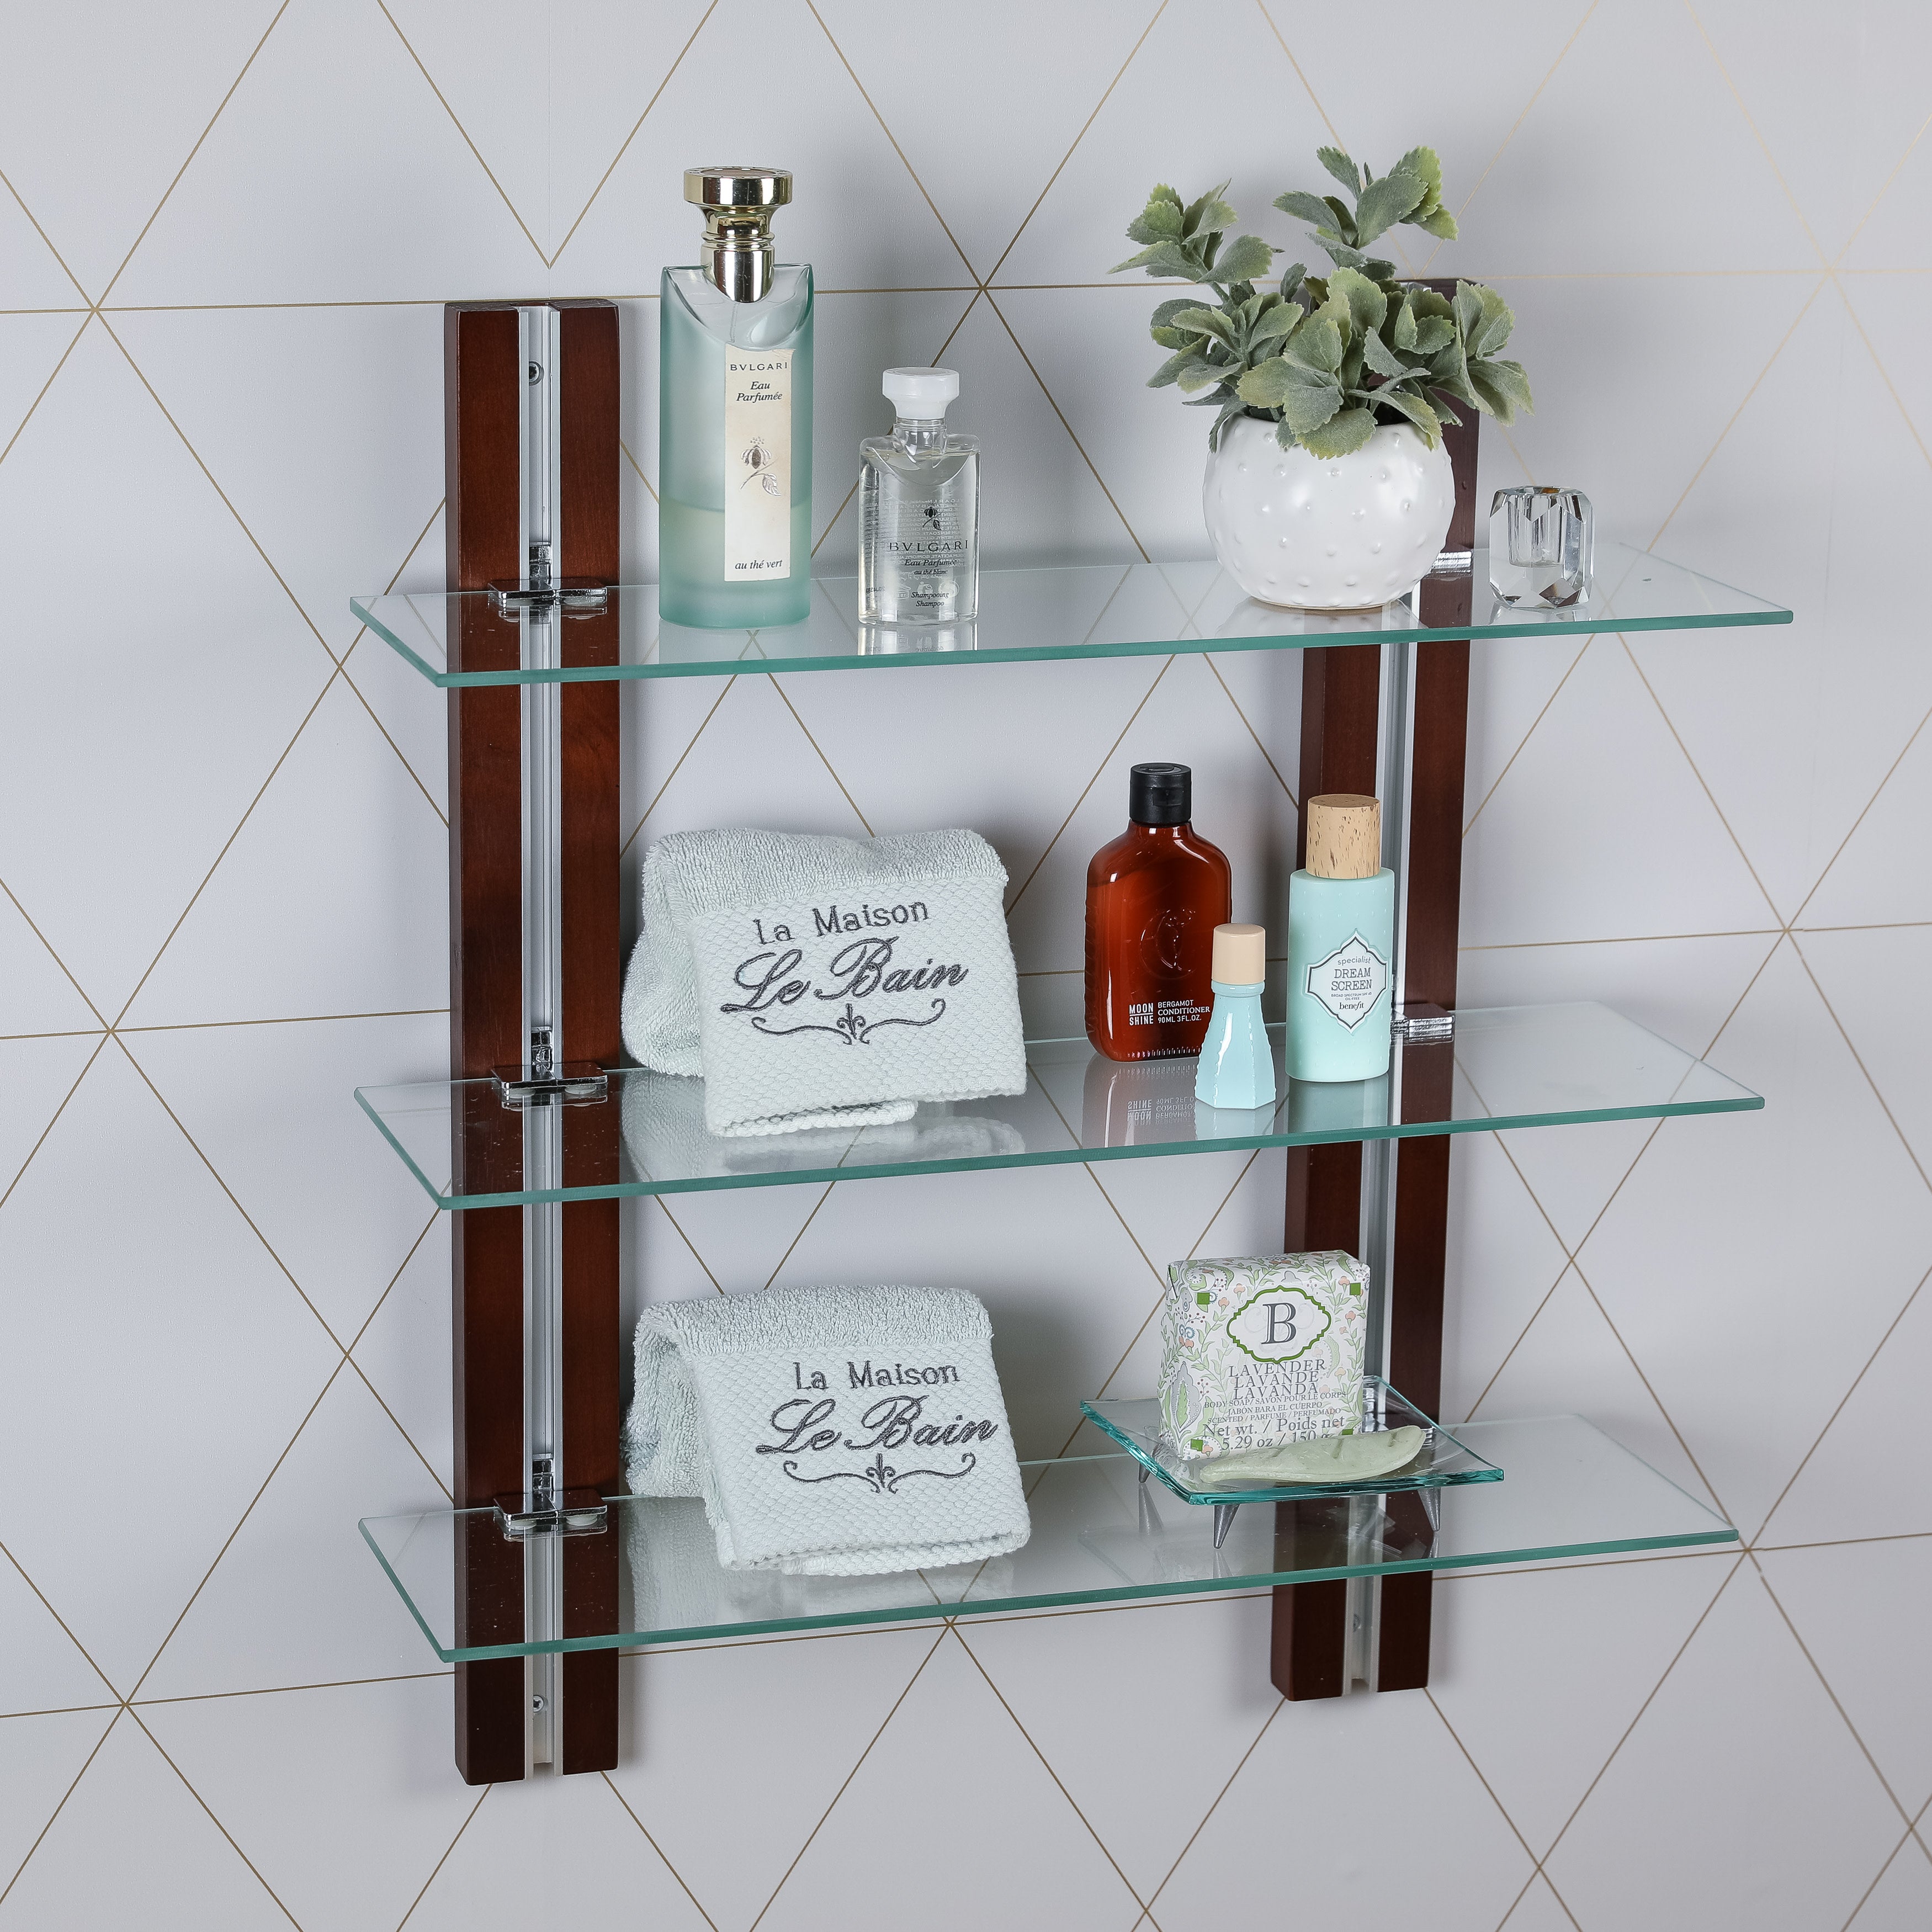 19.75 Floating Glass Bathroom Wall Shelf Chrome - Danya B.